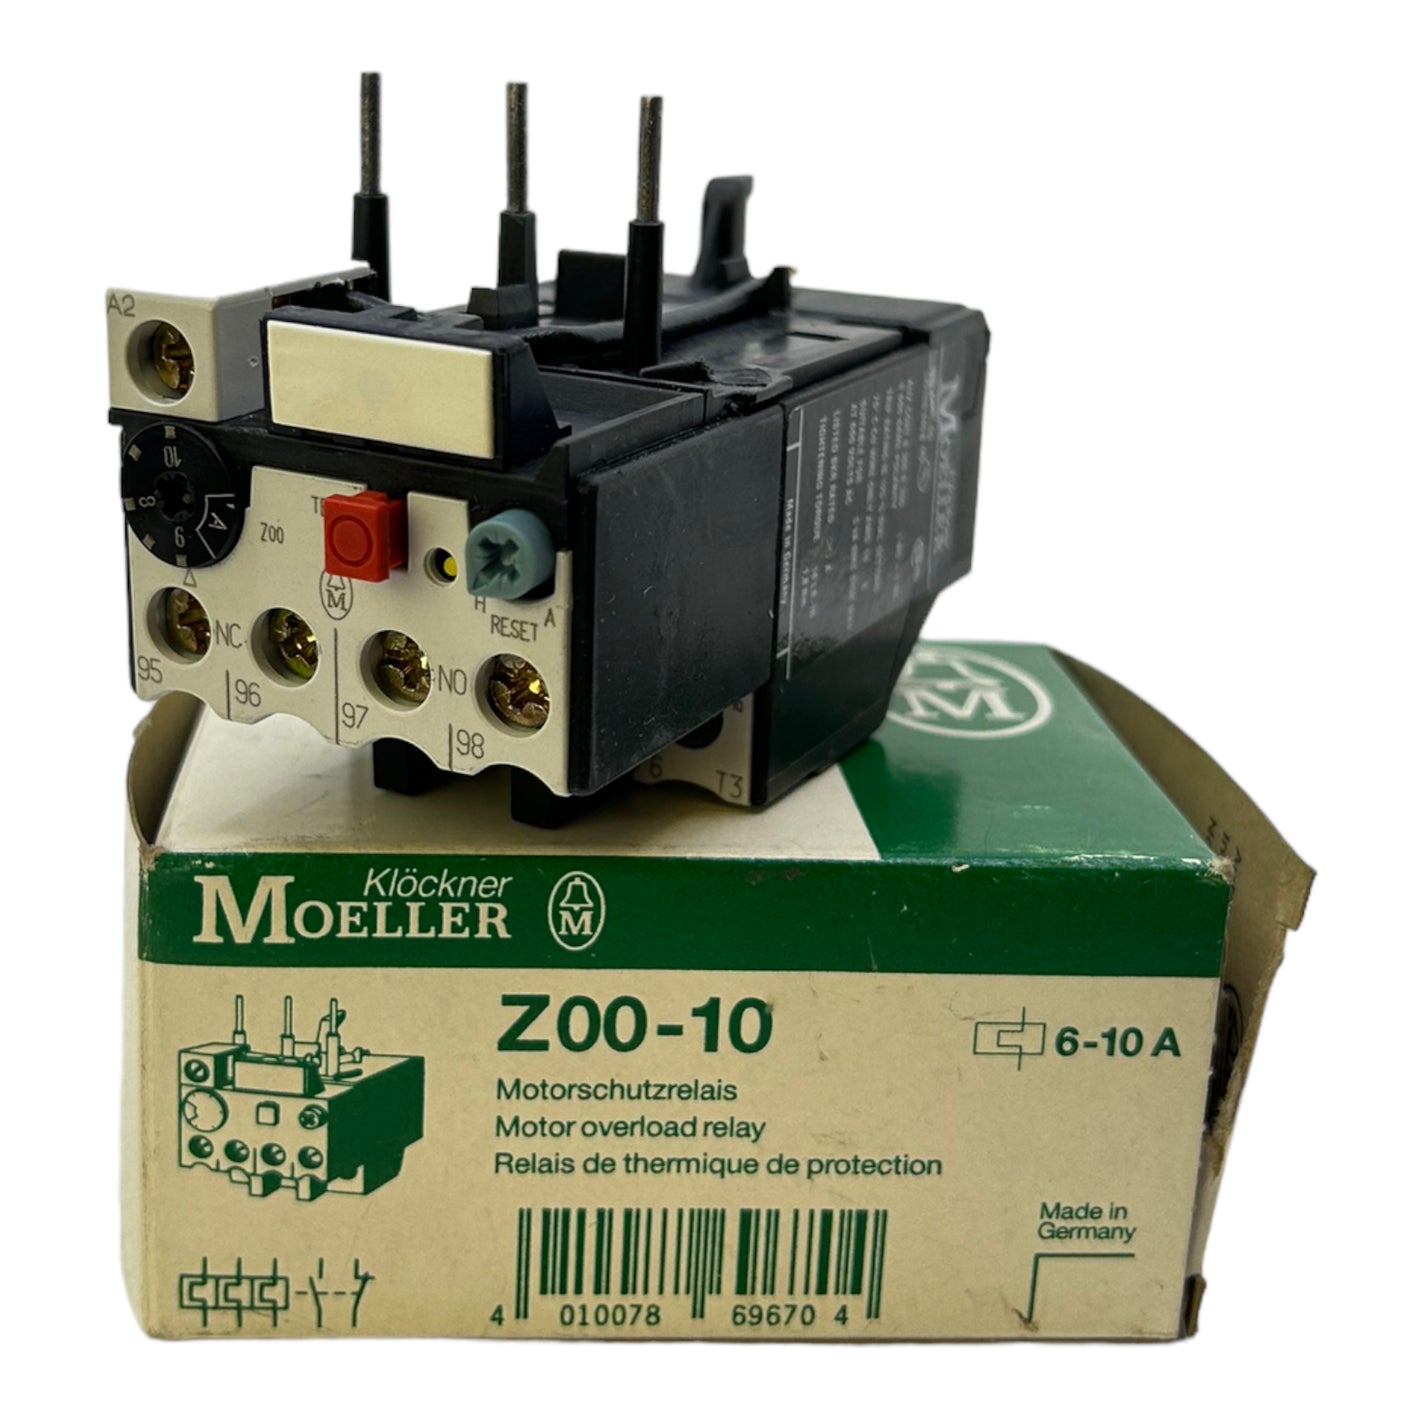 Klöckner Moeller Z00-10 motor protection relay 220/240V AC 6-10A 1NO + 1NC relay 